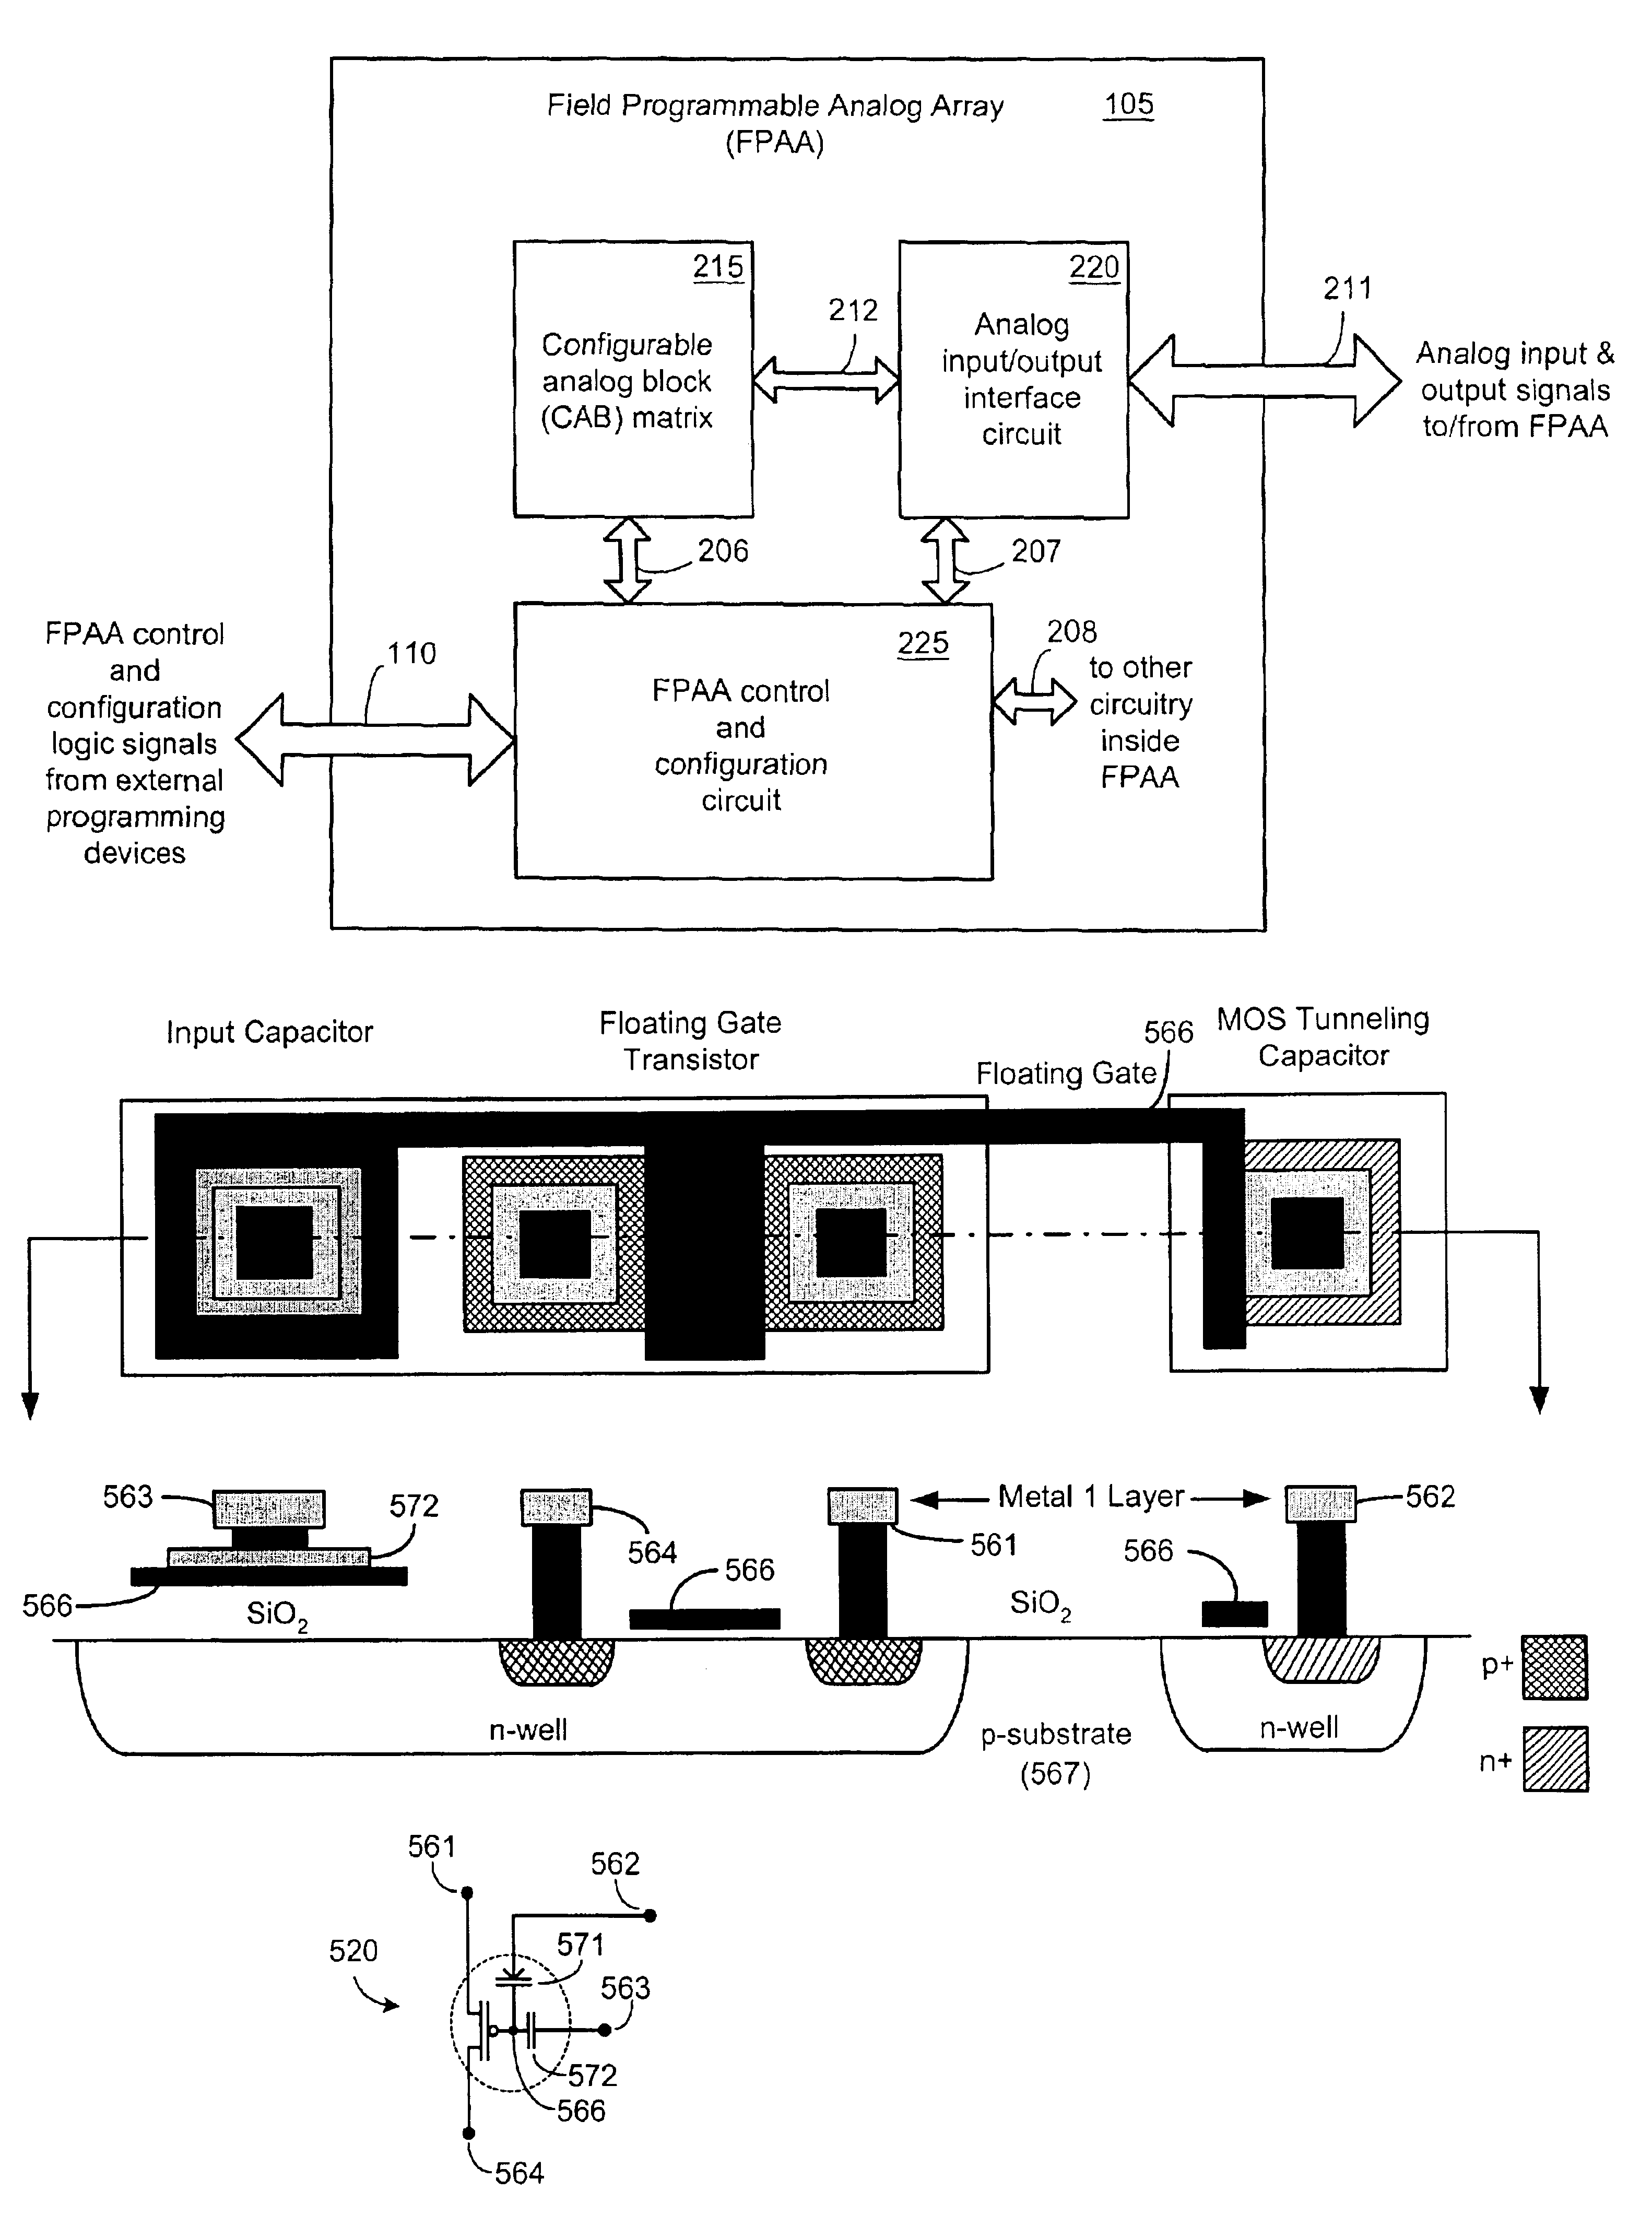 Floating-gate analog circuit